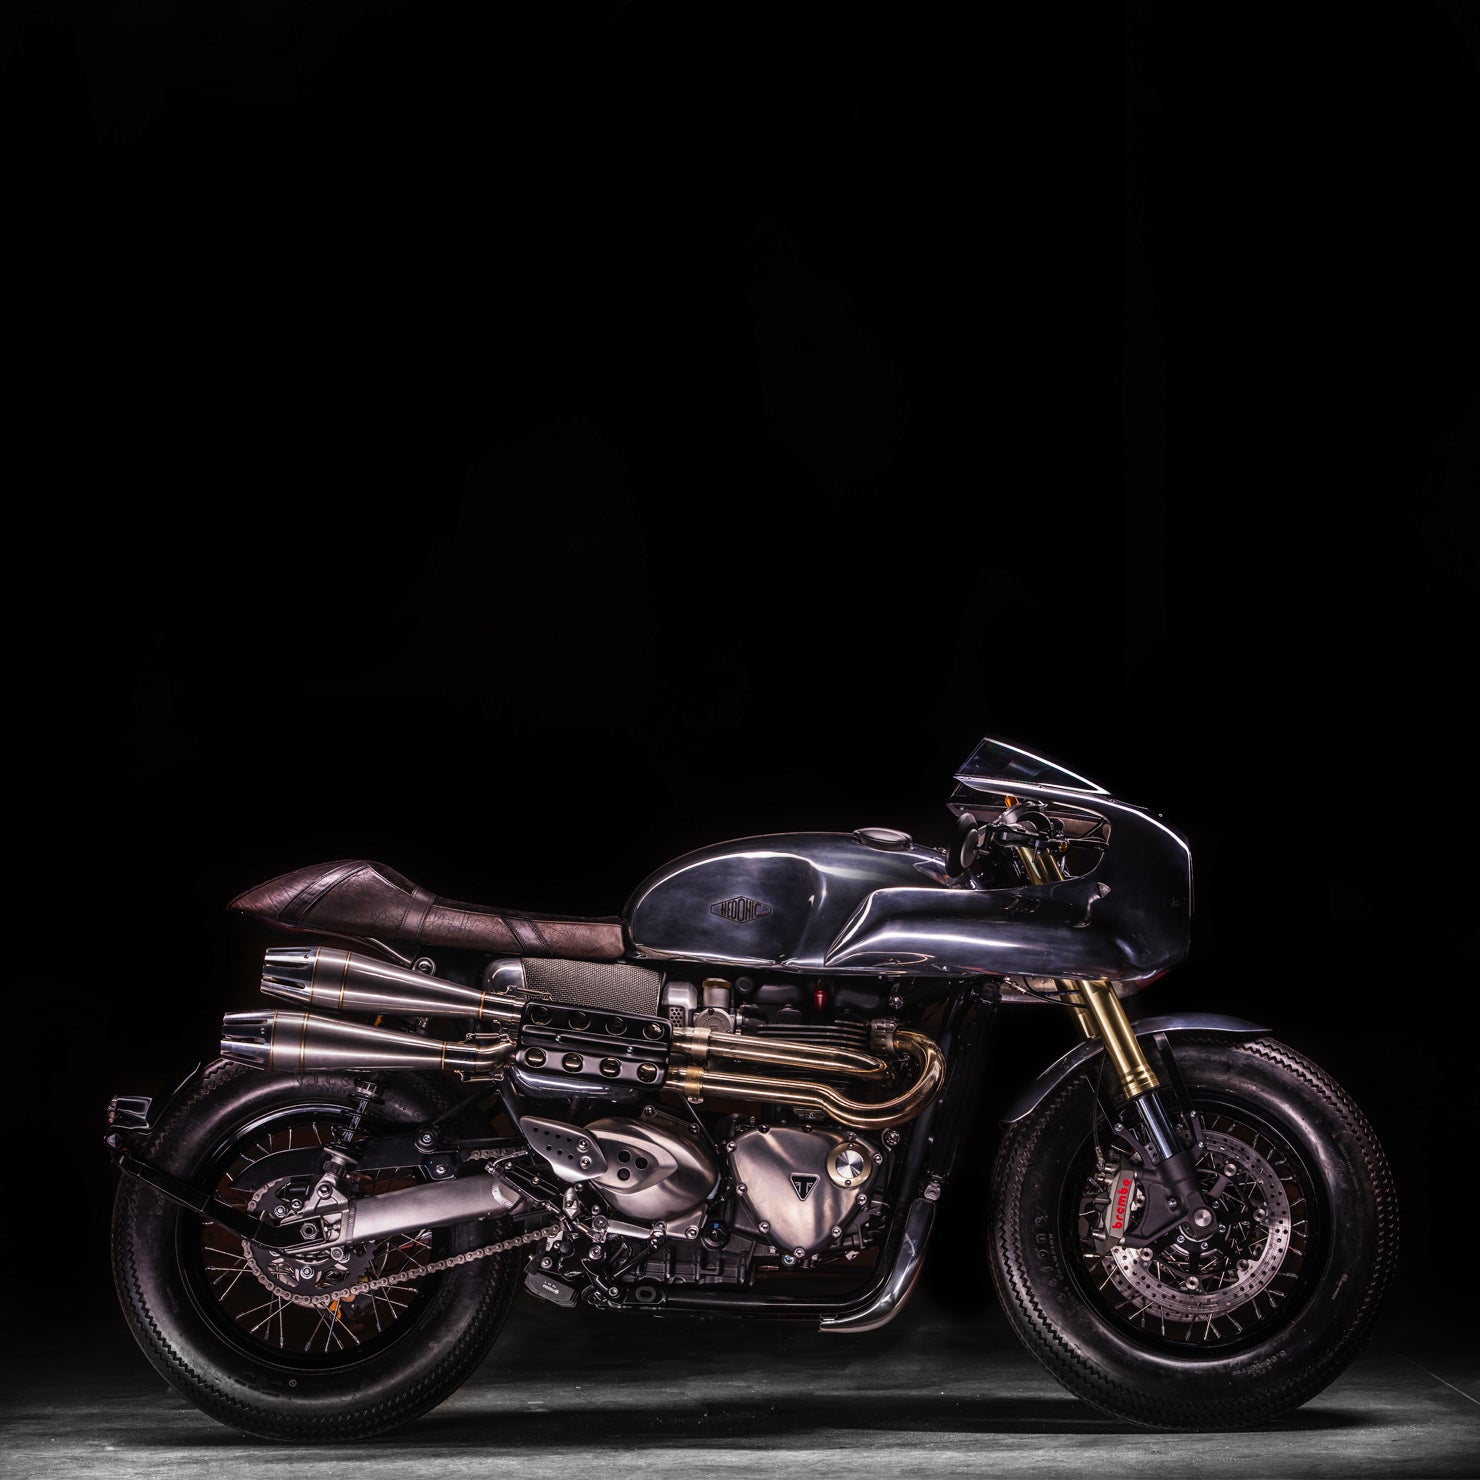 Amazing Motorcycle #000